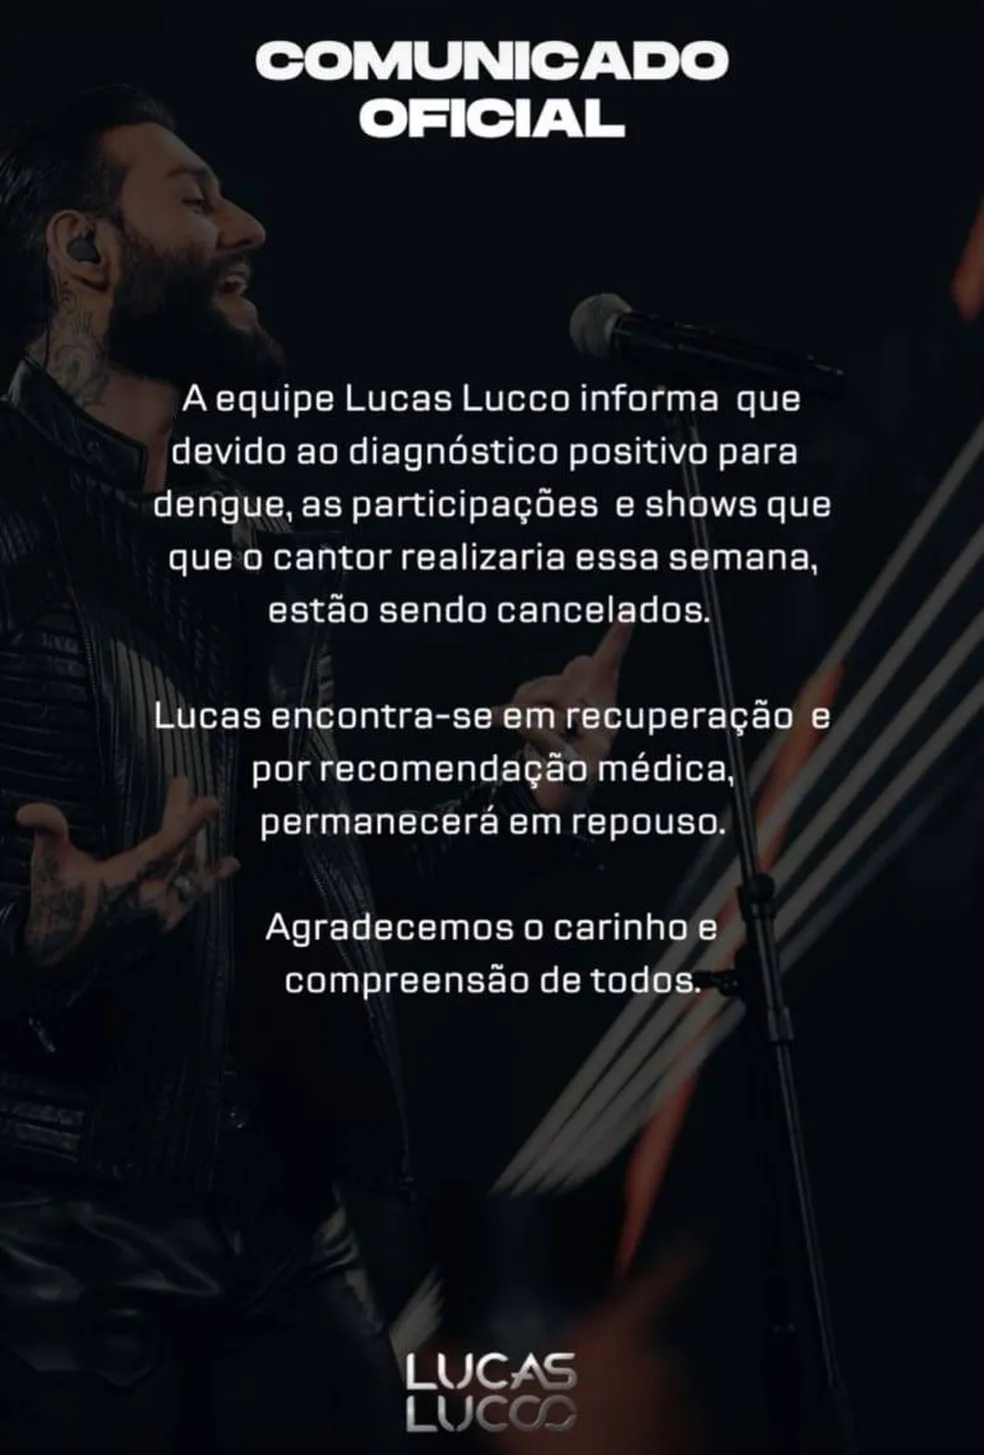 Lucas Lucco usa suas redes sociais para divulgar comunicado sobre diagnóstico de doença que pode até matar, e é obrigado a cancelar shows - Foto Reprodução